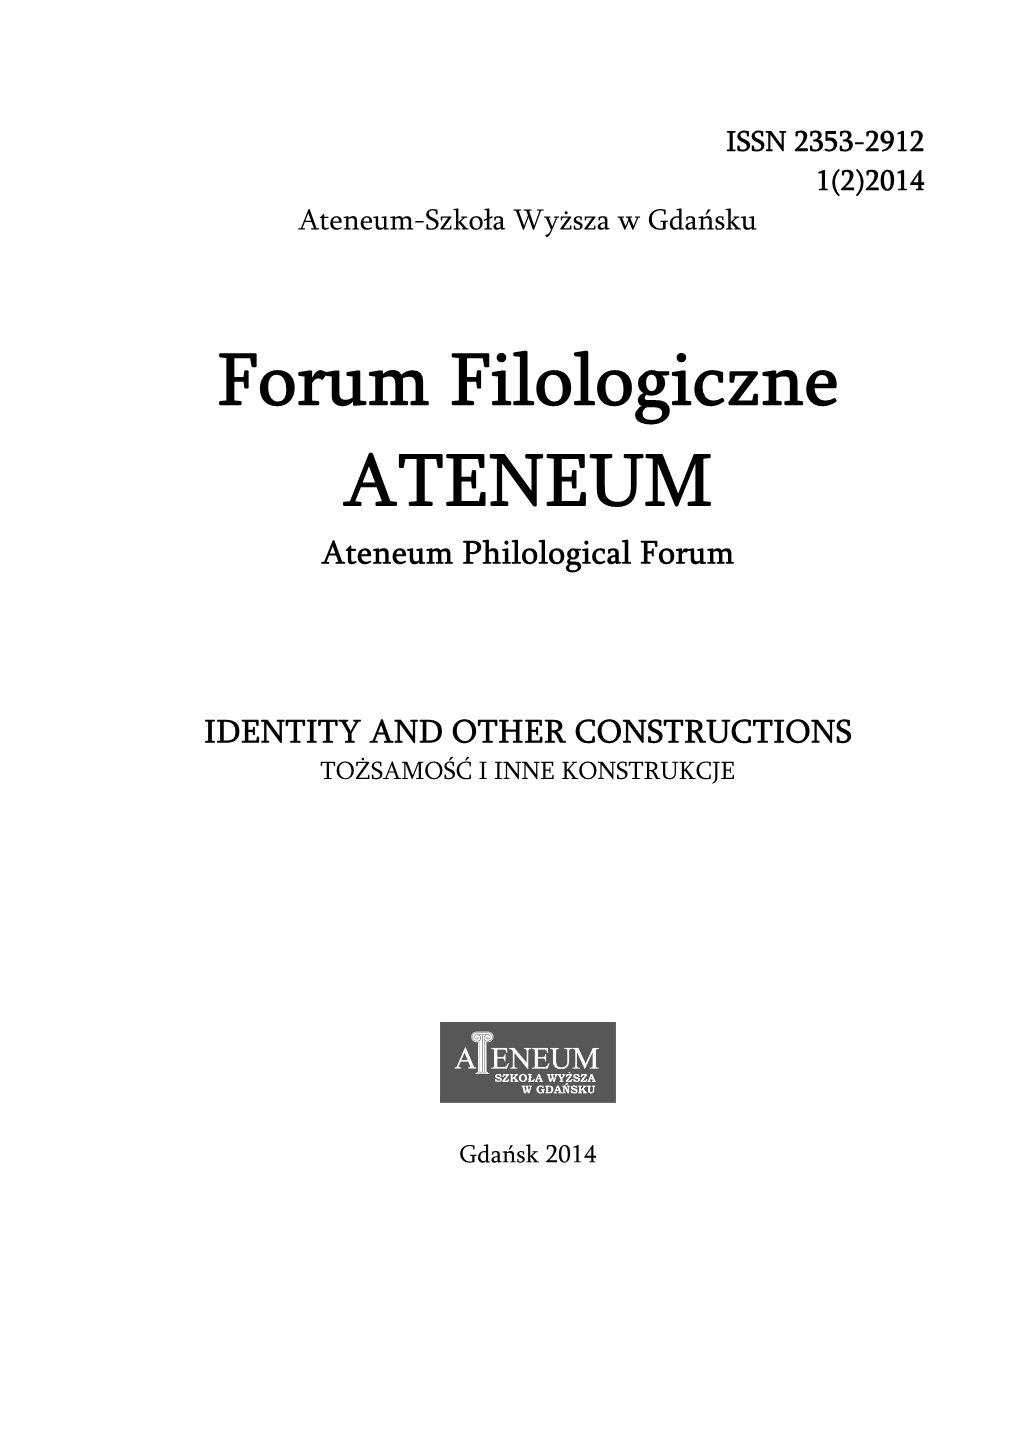 Forum Filologiczne ATENEUM Ateneum Philological Forum